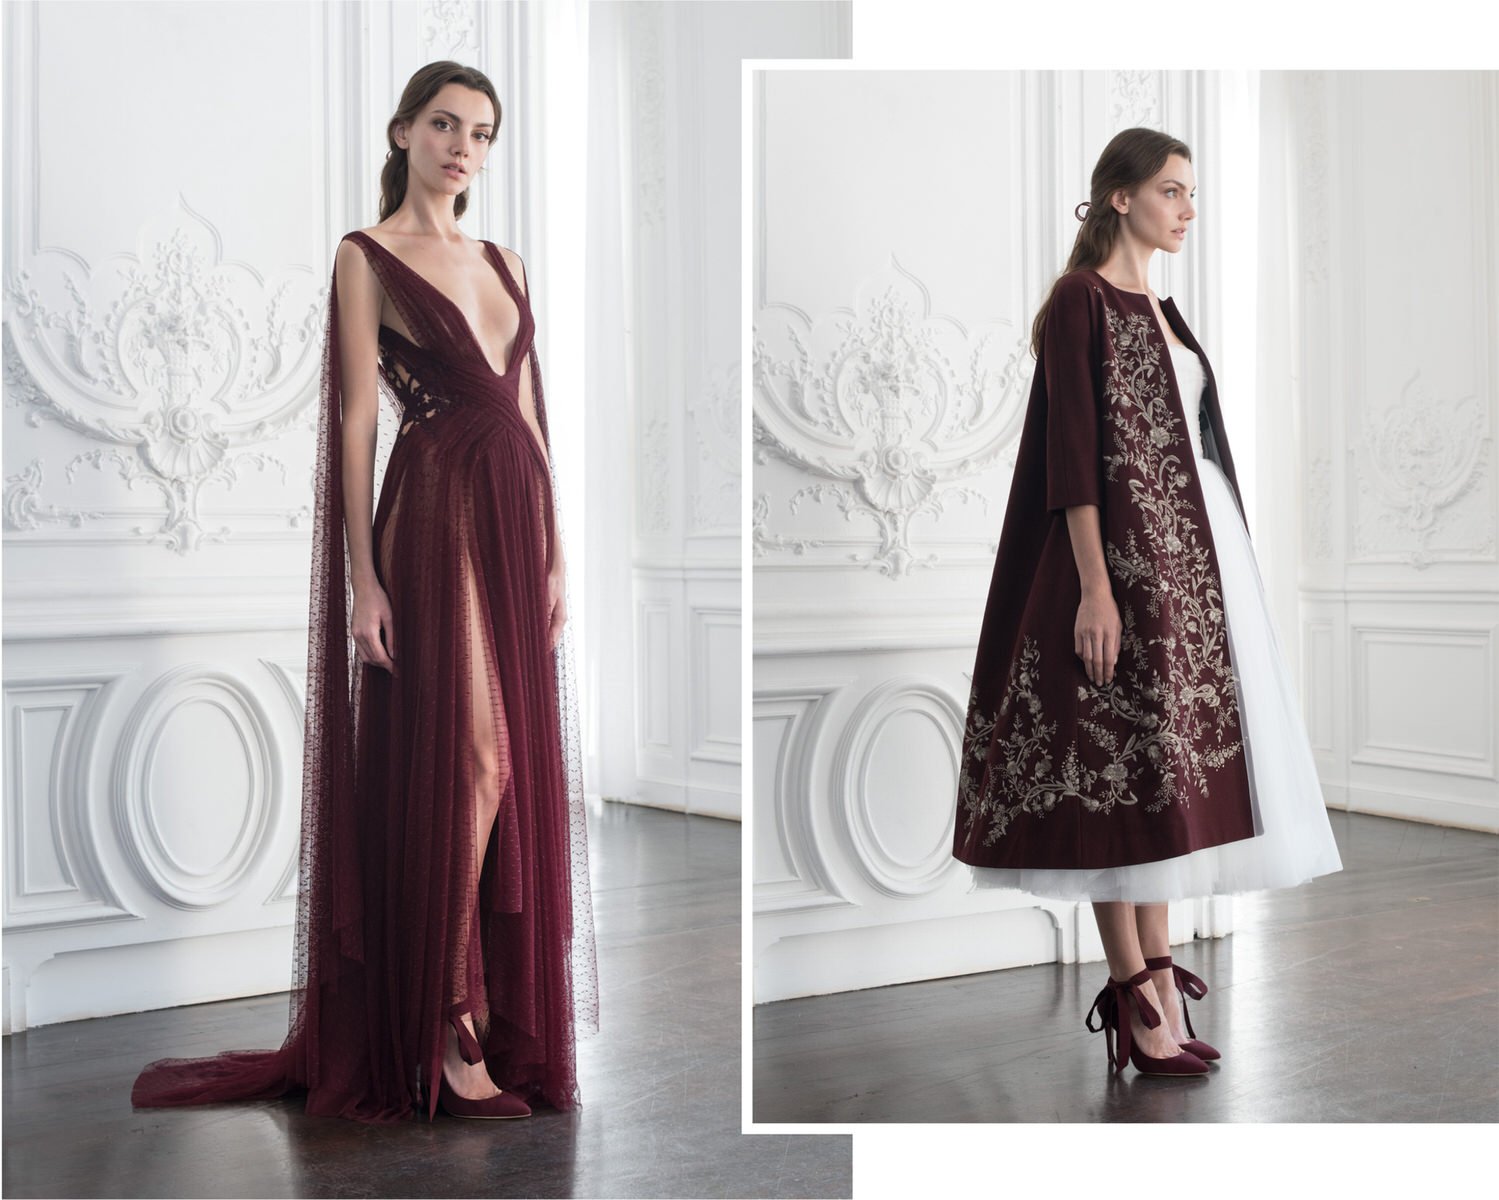 Paolo Sebastian 2018-19 Autumn/Winter Couture Collection